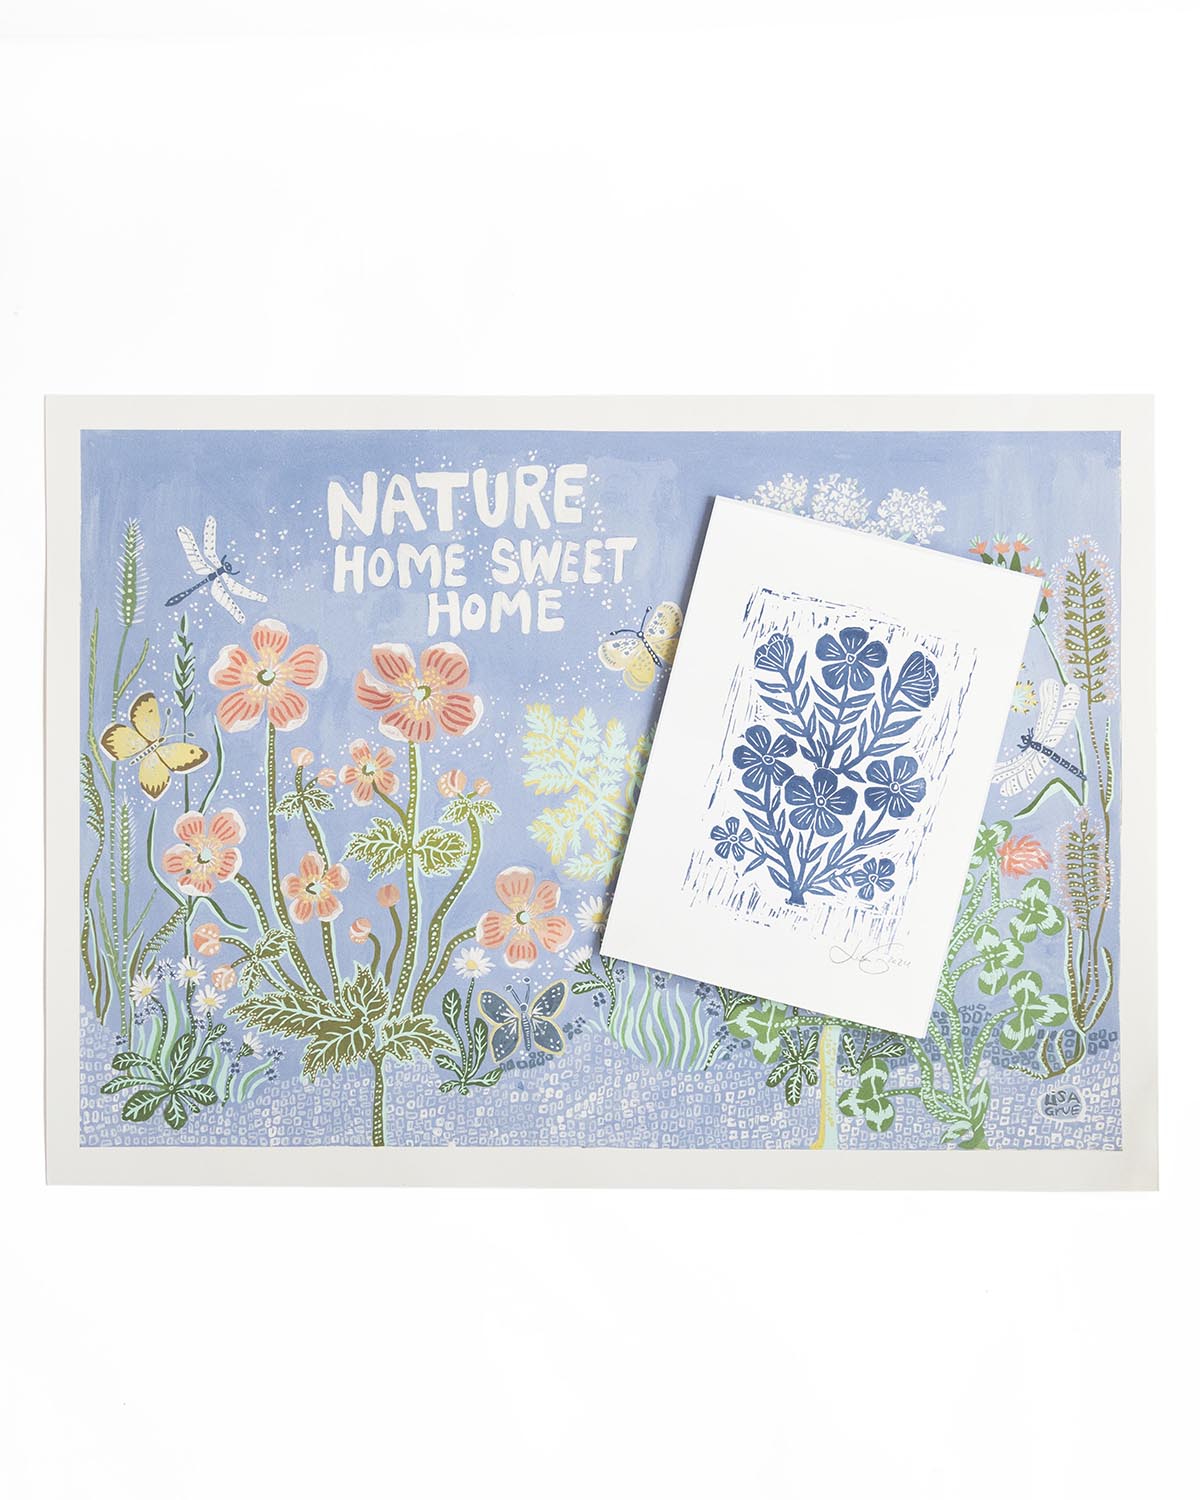 
                  
                    Nature - Home sweet home
                  
                